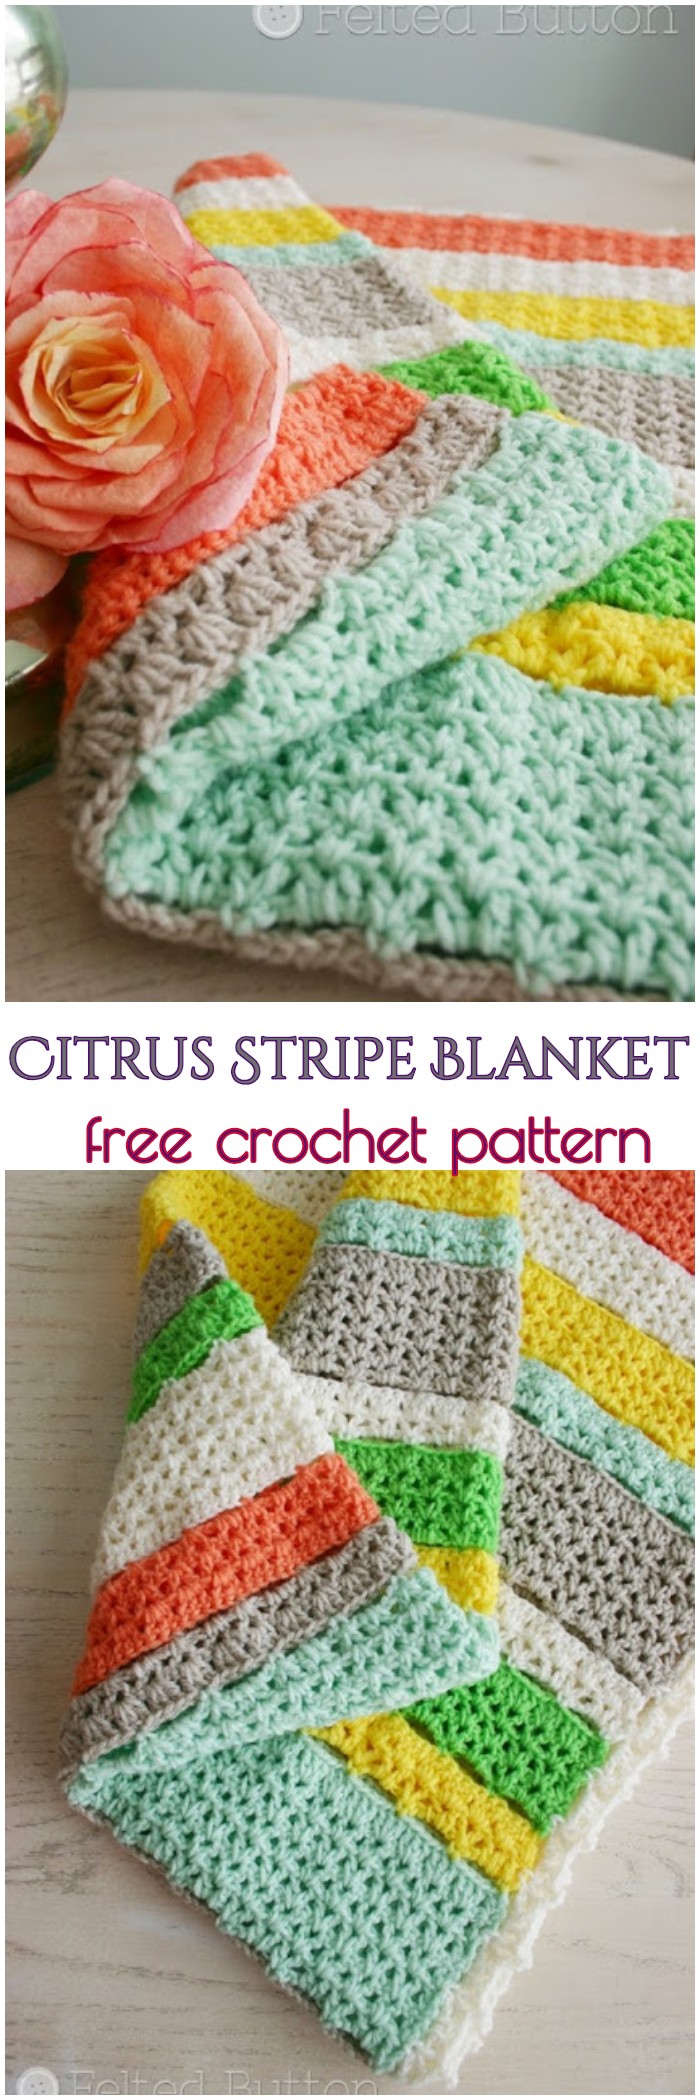 Crochet Citrus Stripe Blanket